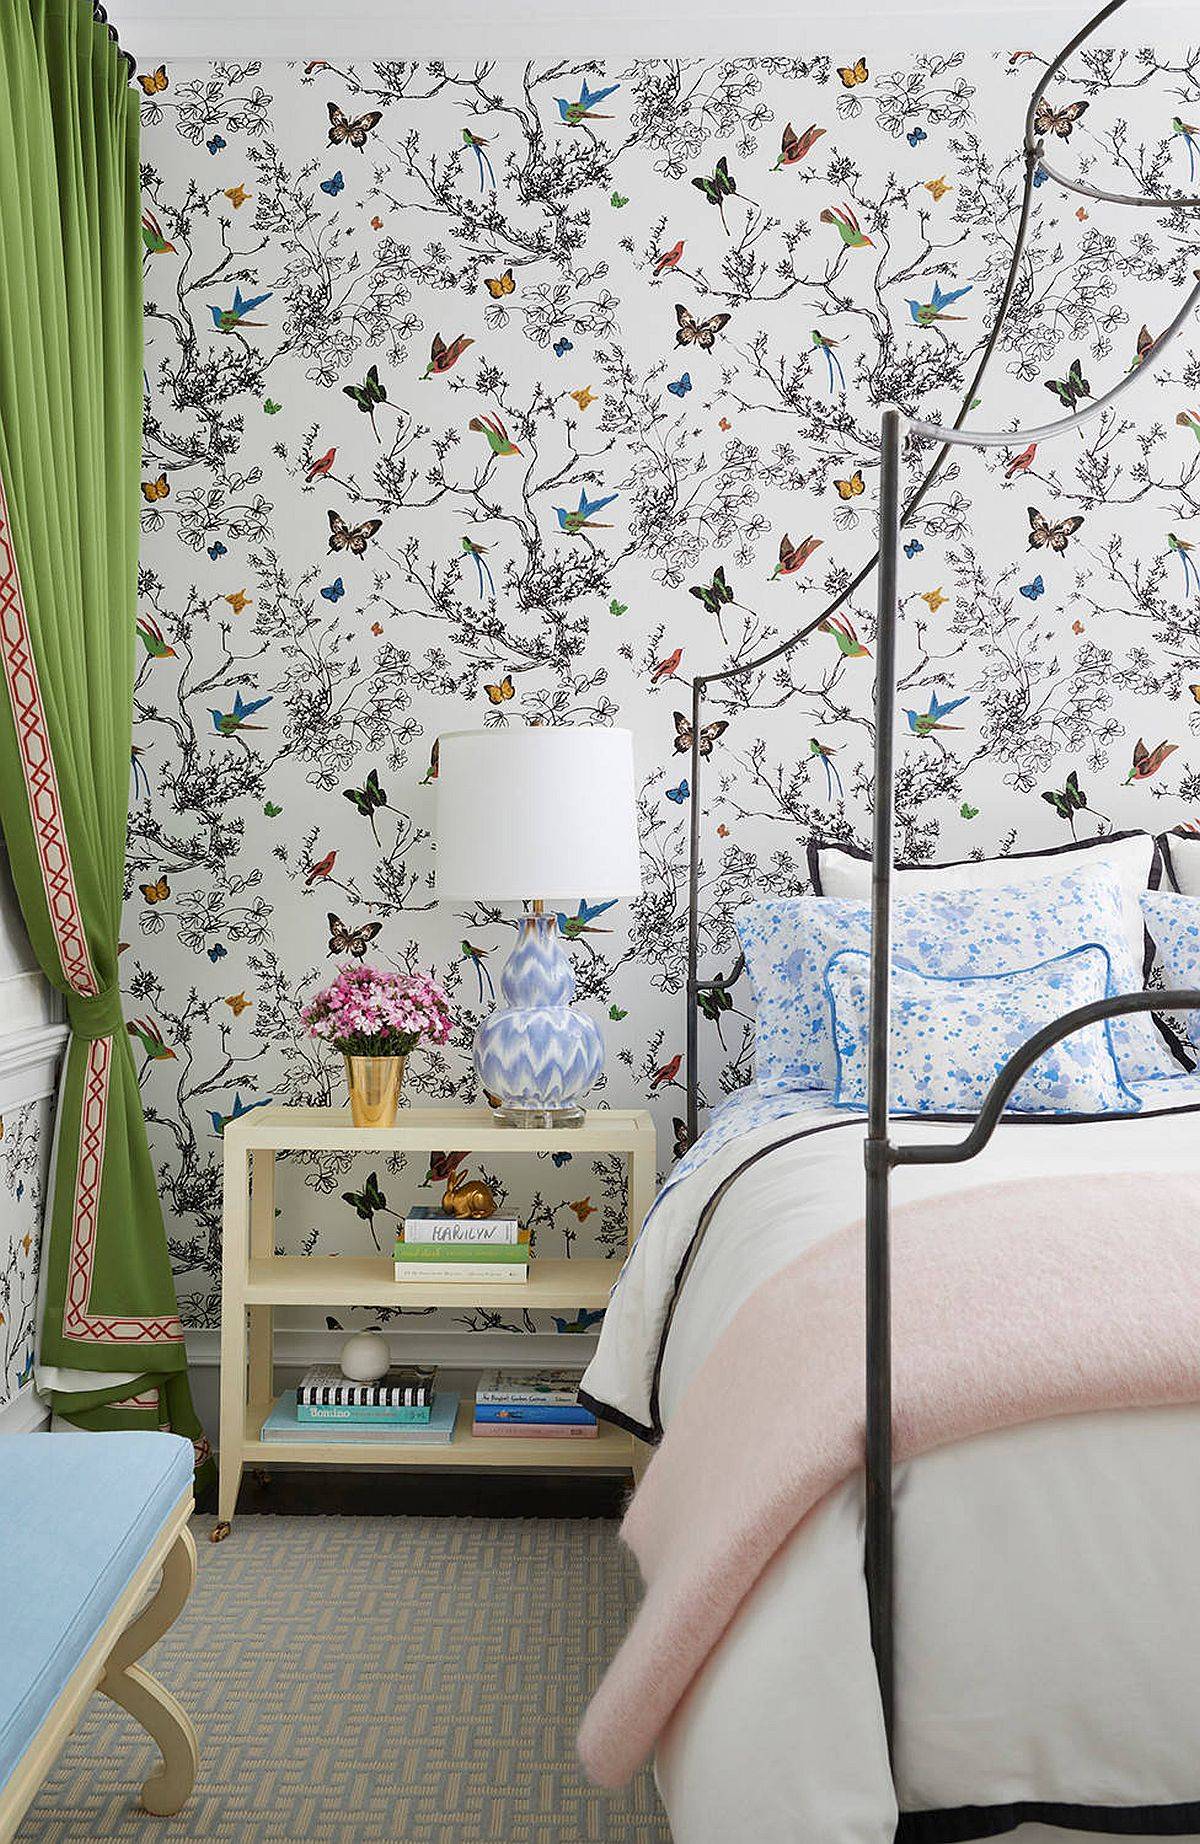 Giấy dán tường họa tiết mùa xuân hoàn hảo cho phòng ngủ đương đại với sự rung cảm tươi mát của mùa hè.